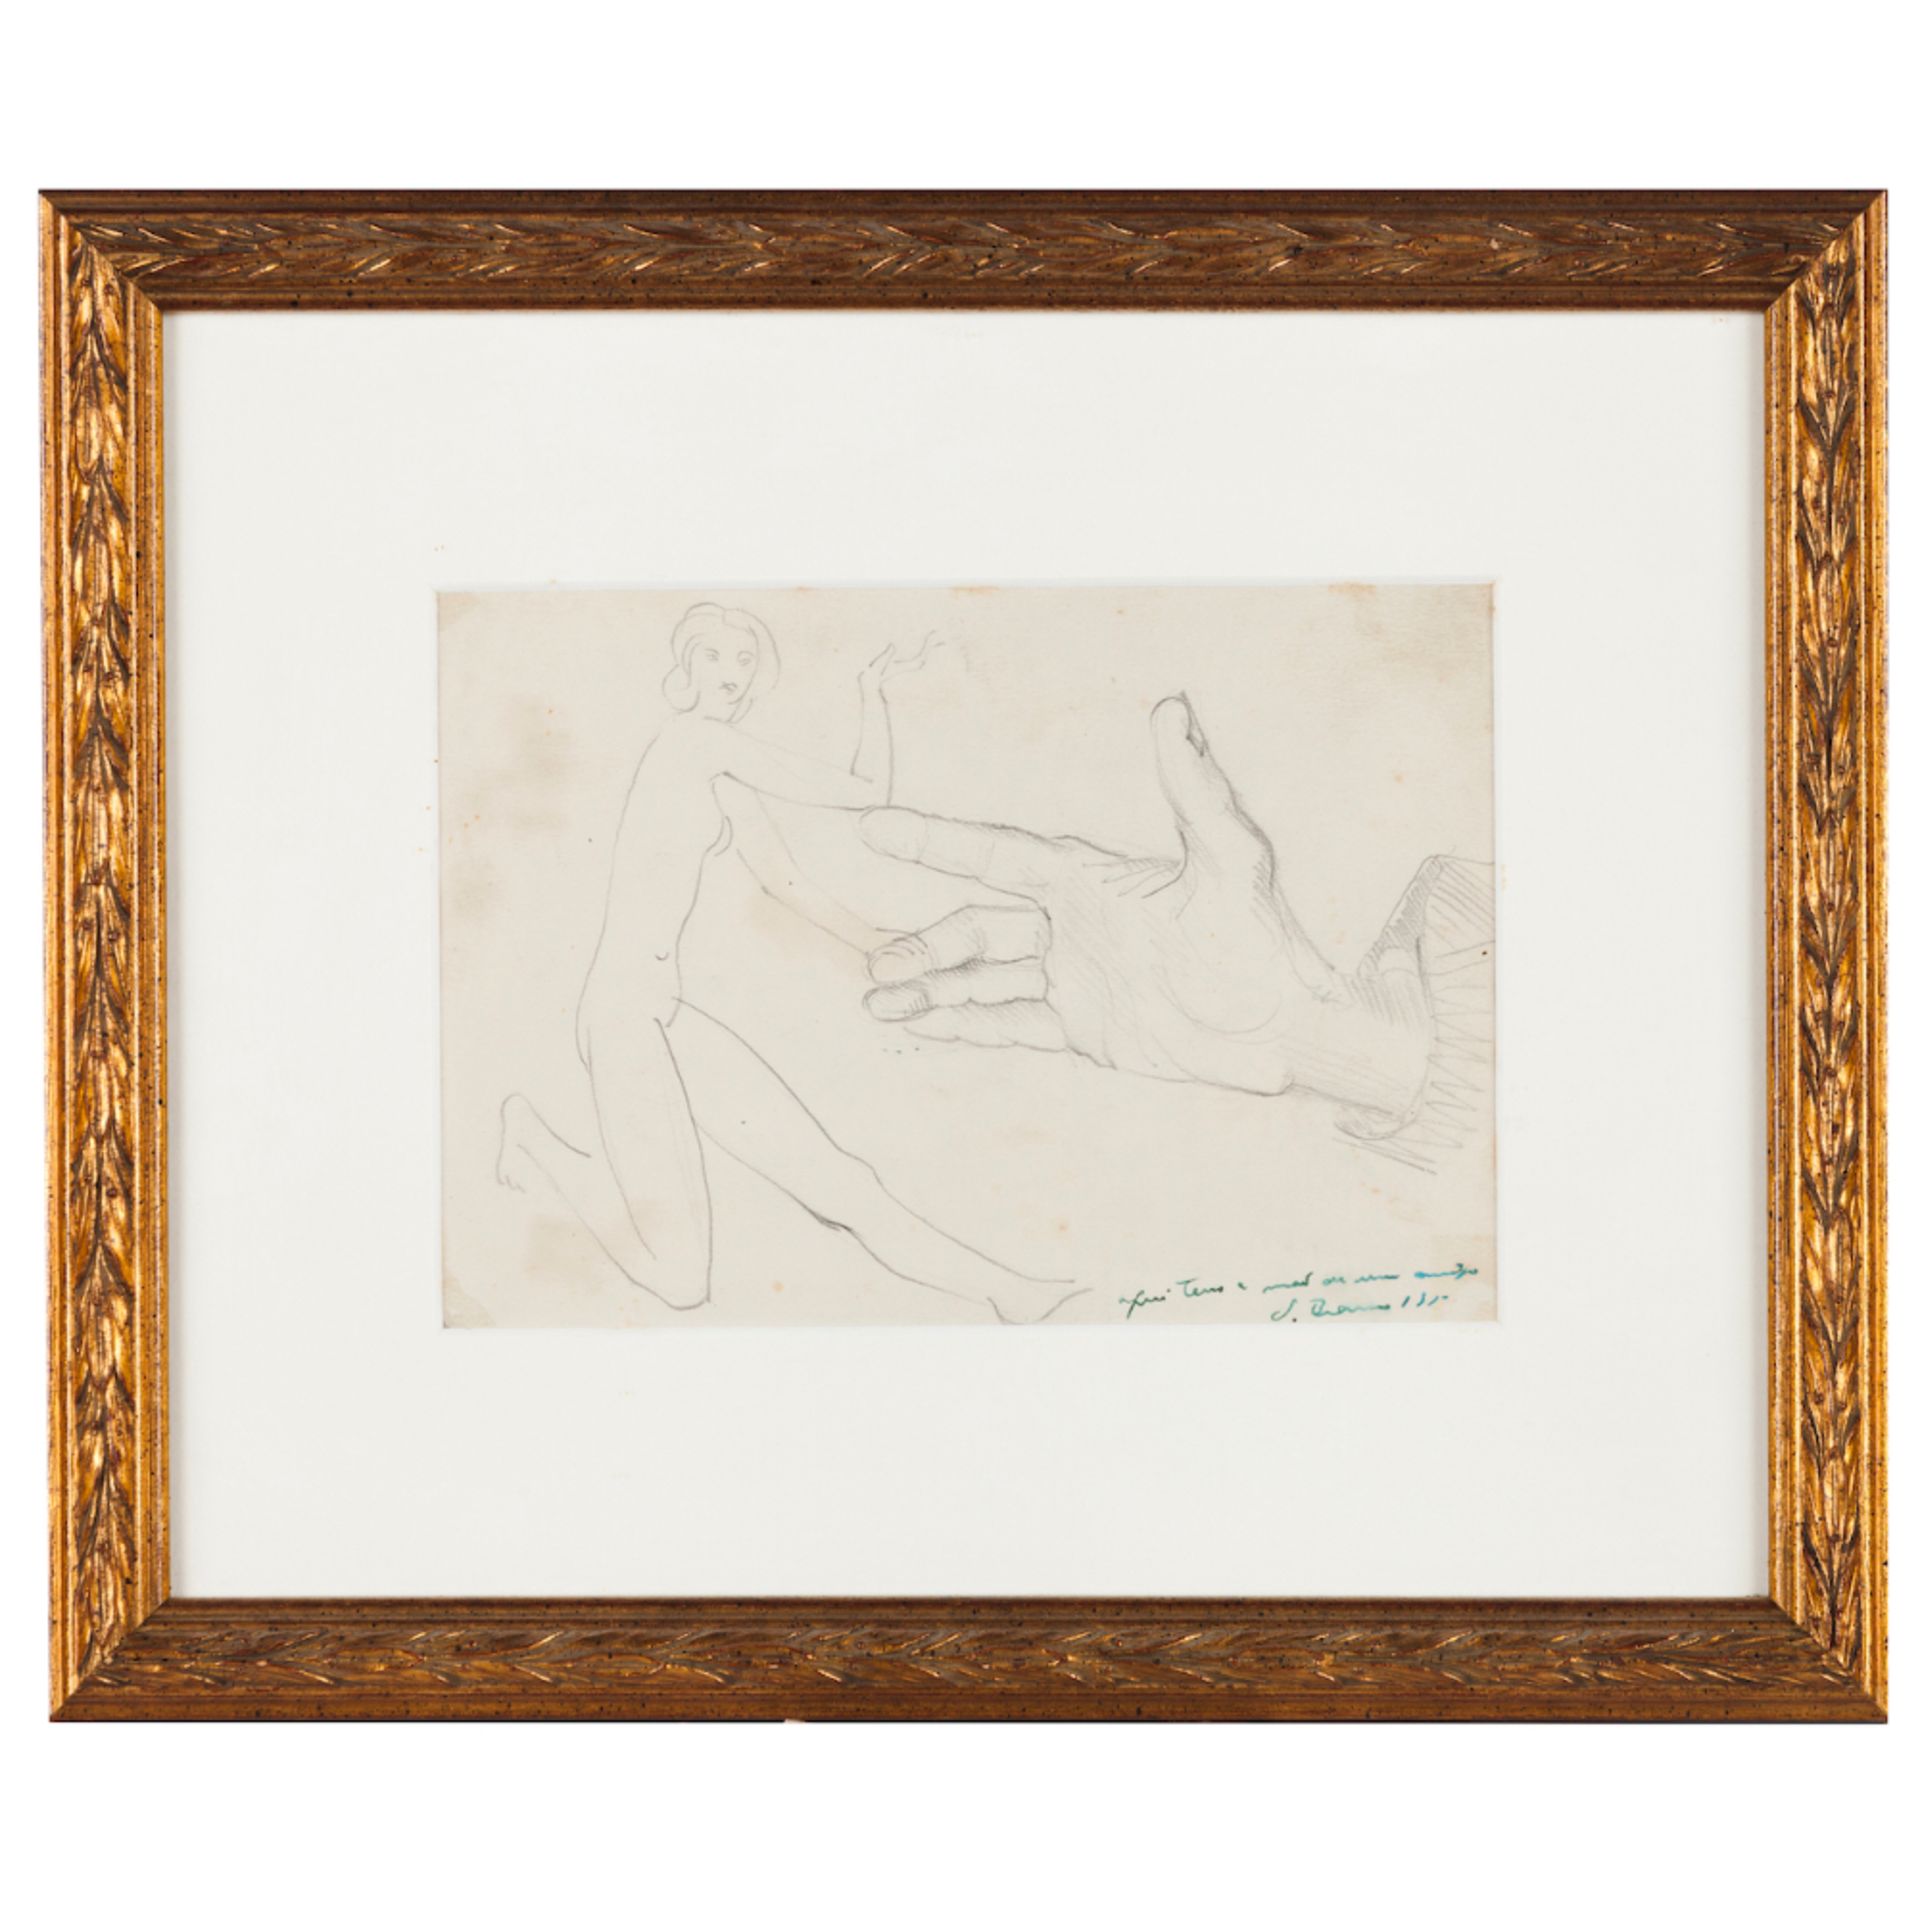 "Aqui tens a mão de um amigo"Charcoal on paper Signed "J Branco" and dated 195(?)12,5x18 cm